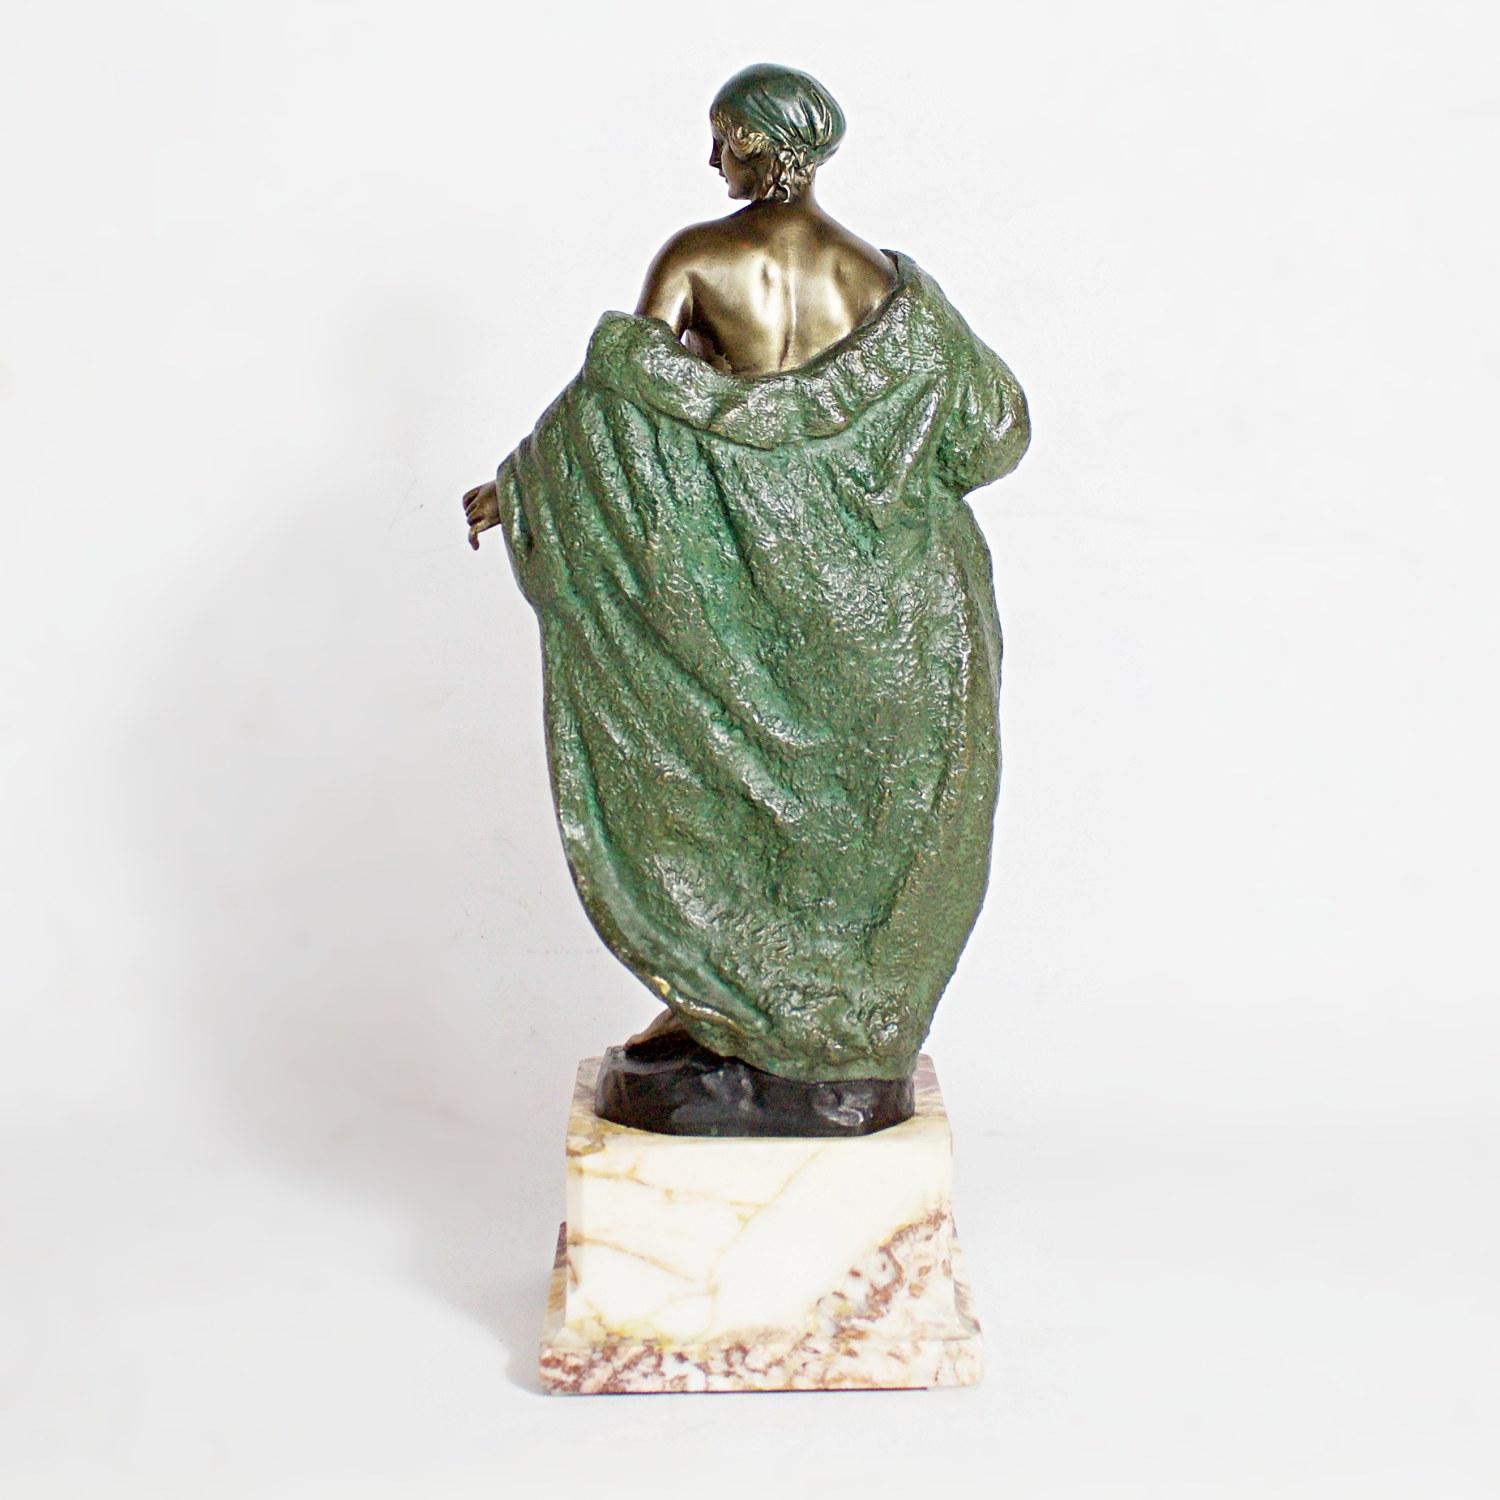 art deco bronze figures for sale